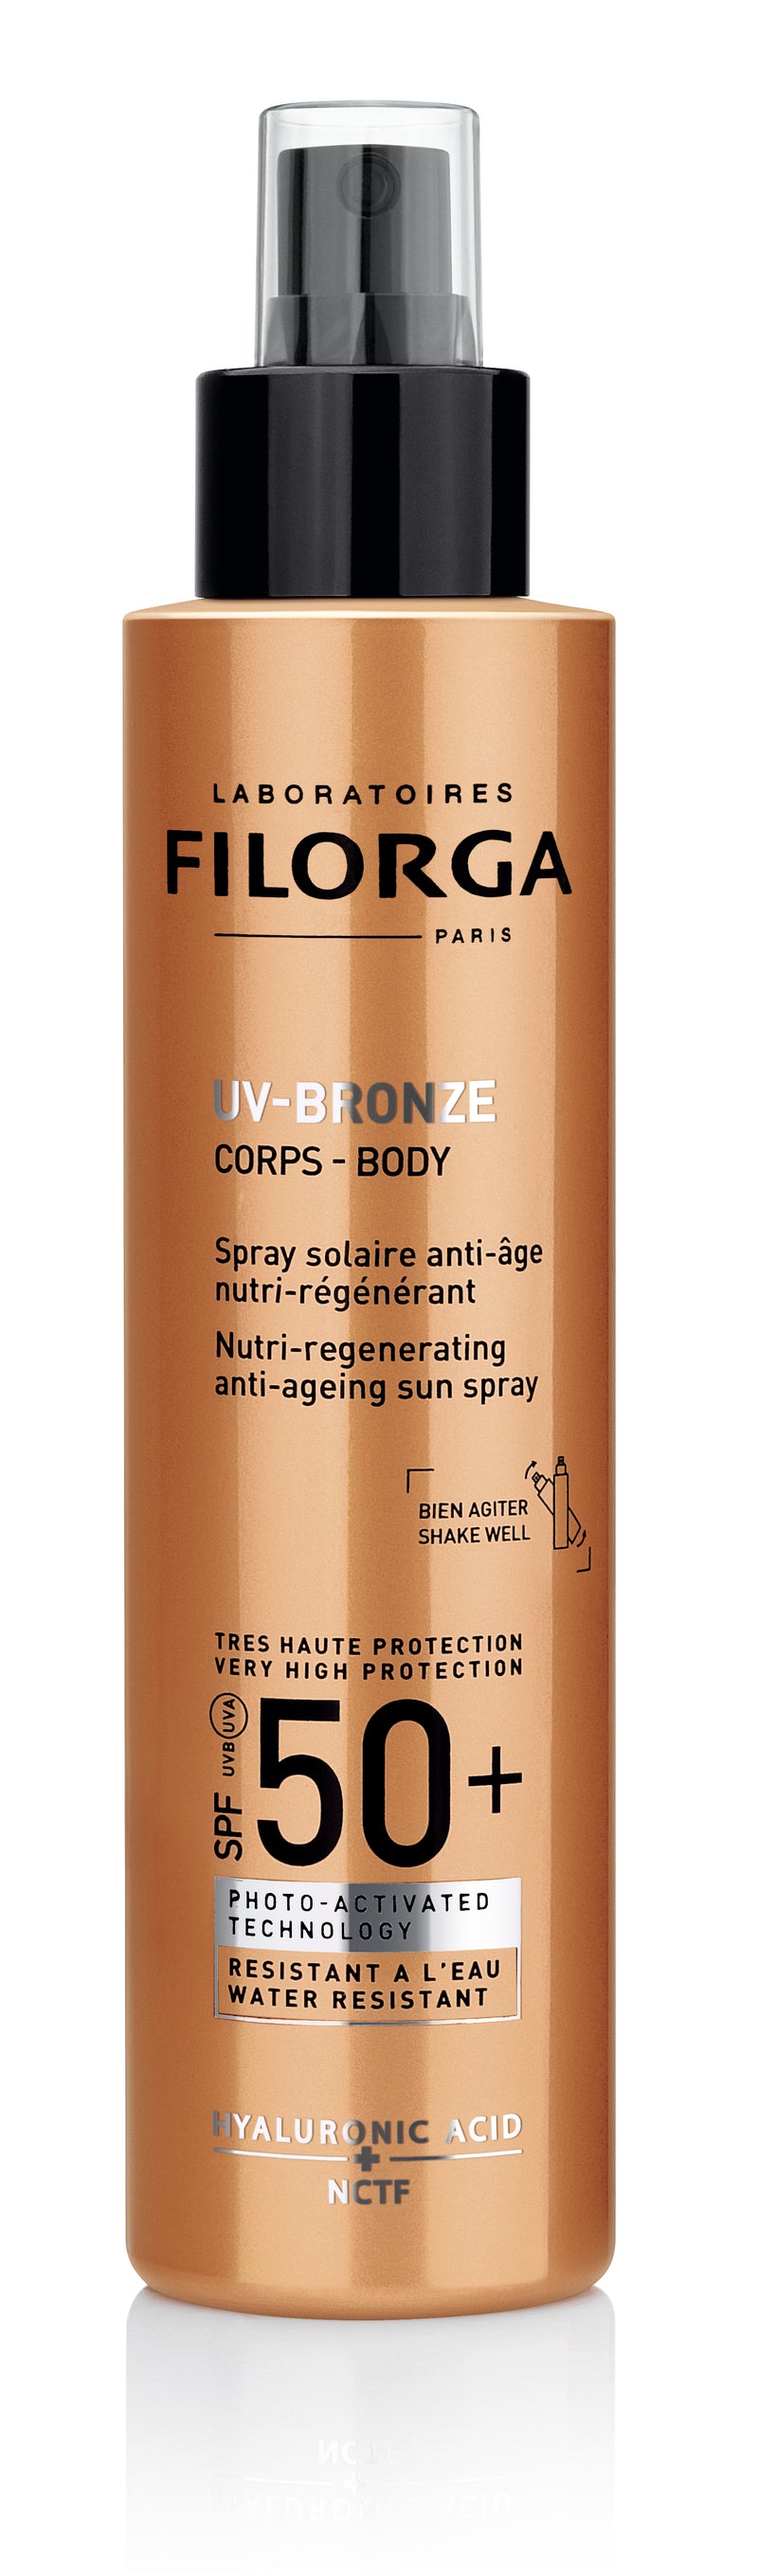 Uv-Bronze Spray Corpo Spf50+ 150ml - Farmácia Garcia